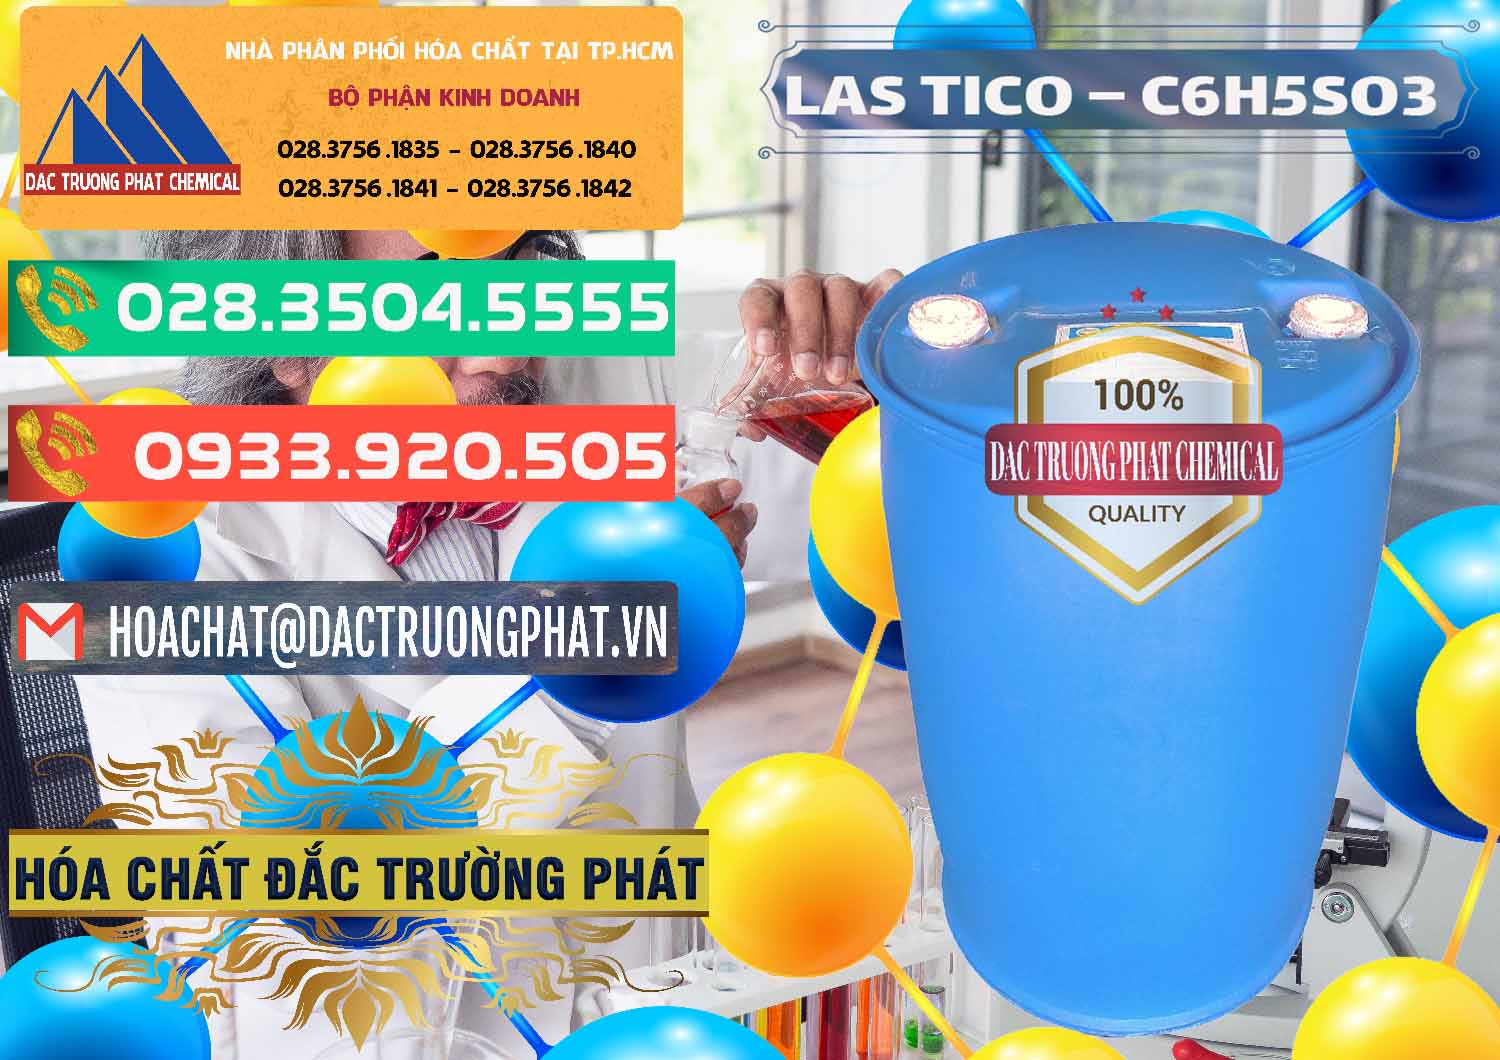 Nơi chuyên cung cấp và bán Chất tạo bọt Las H Tico Việt Nam - 0190 - Nhà cung cấp ( kinh doanh ) hóa chất tại TP.HCM - congtyhoachat.com.vn